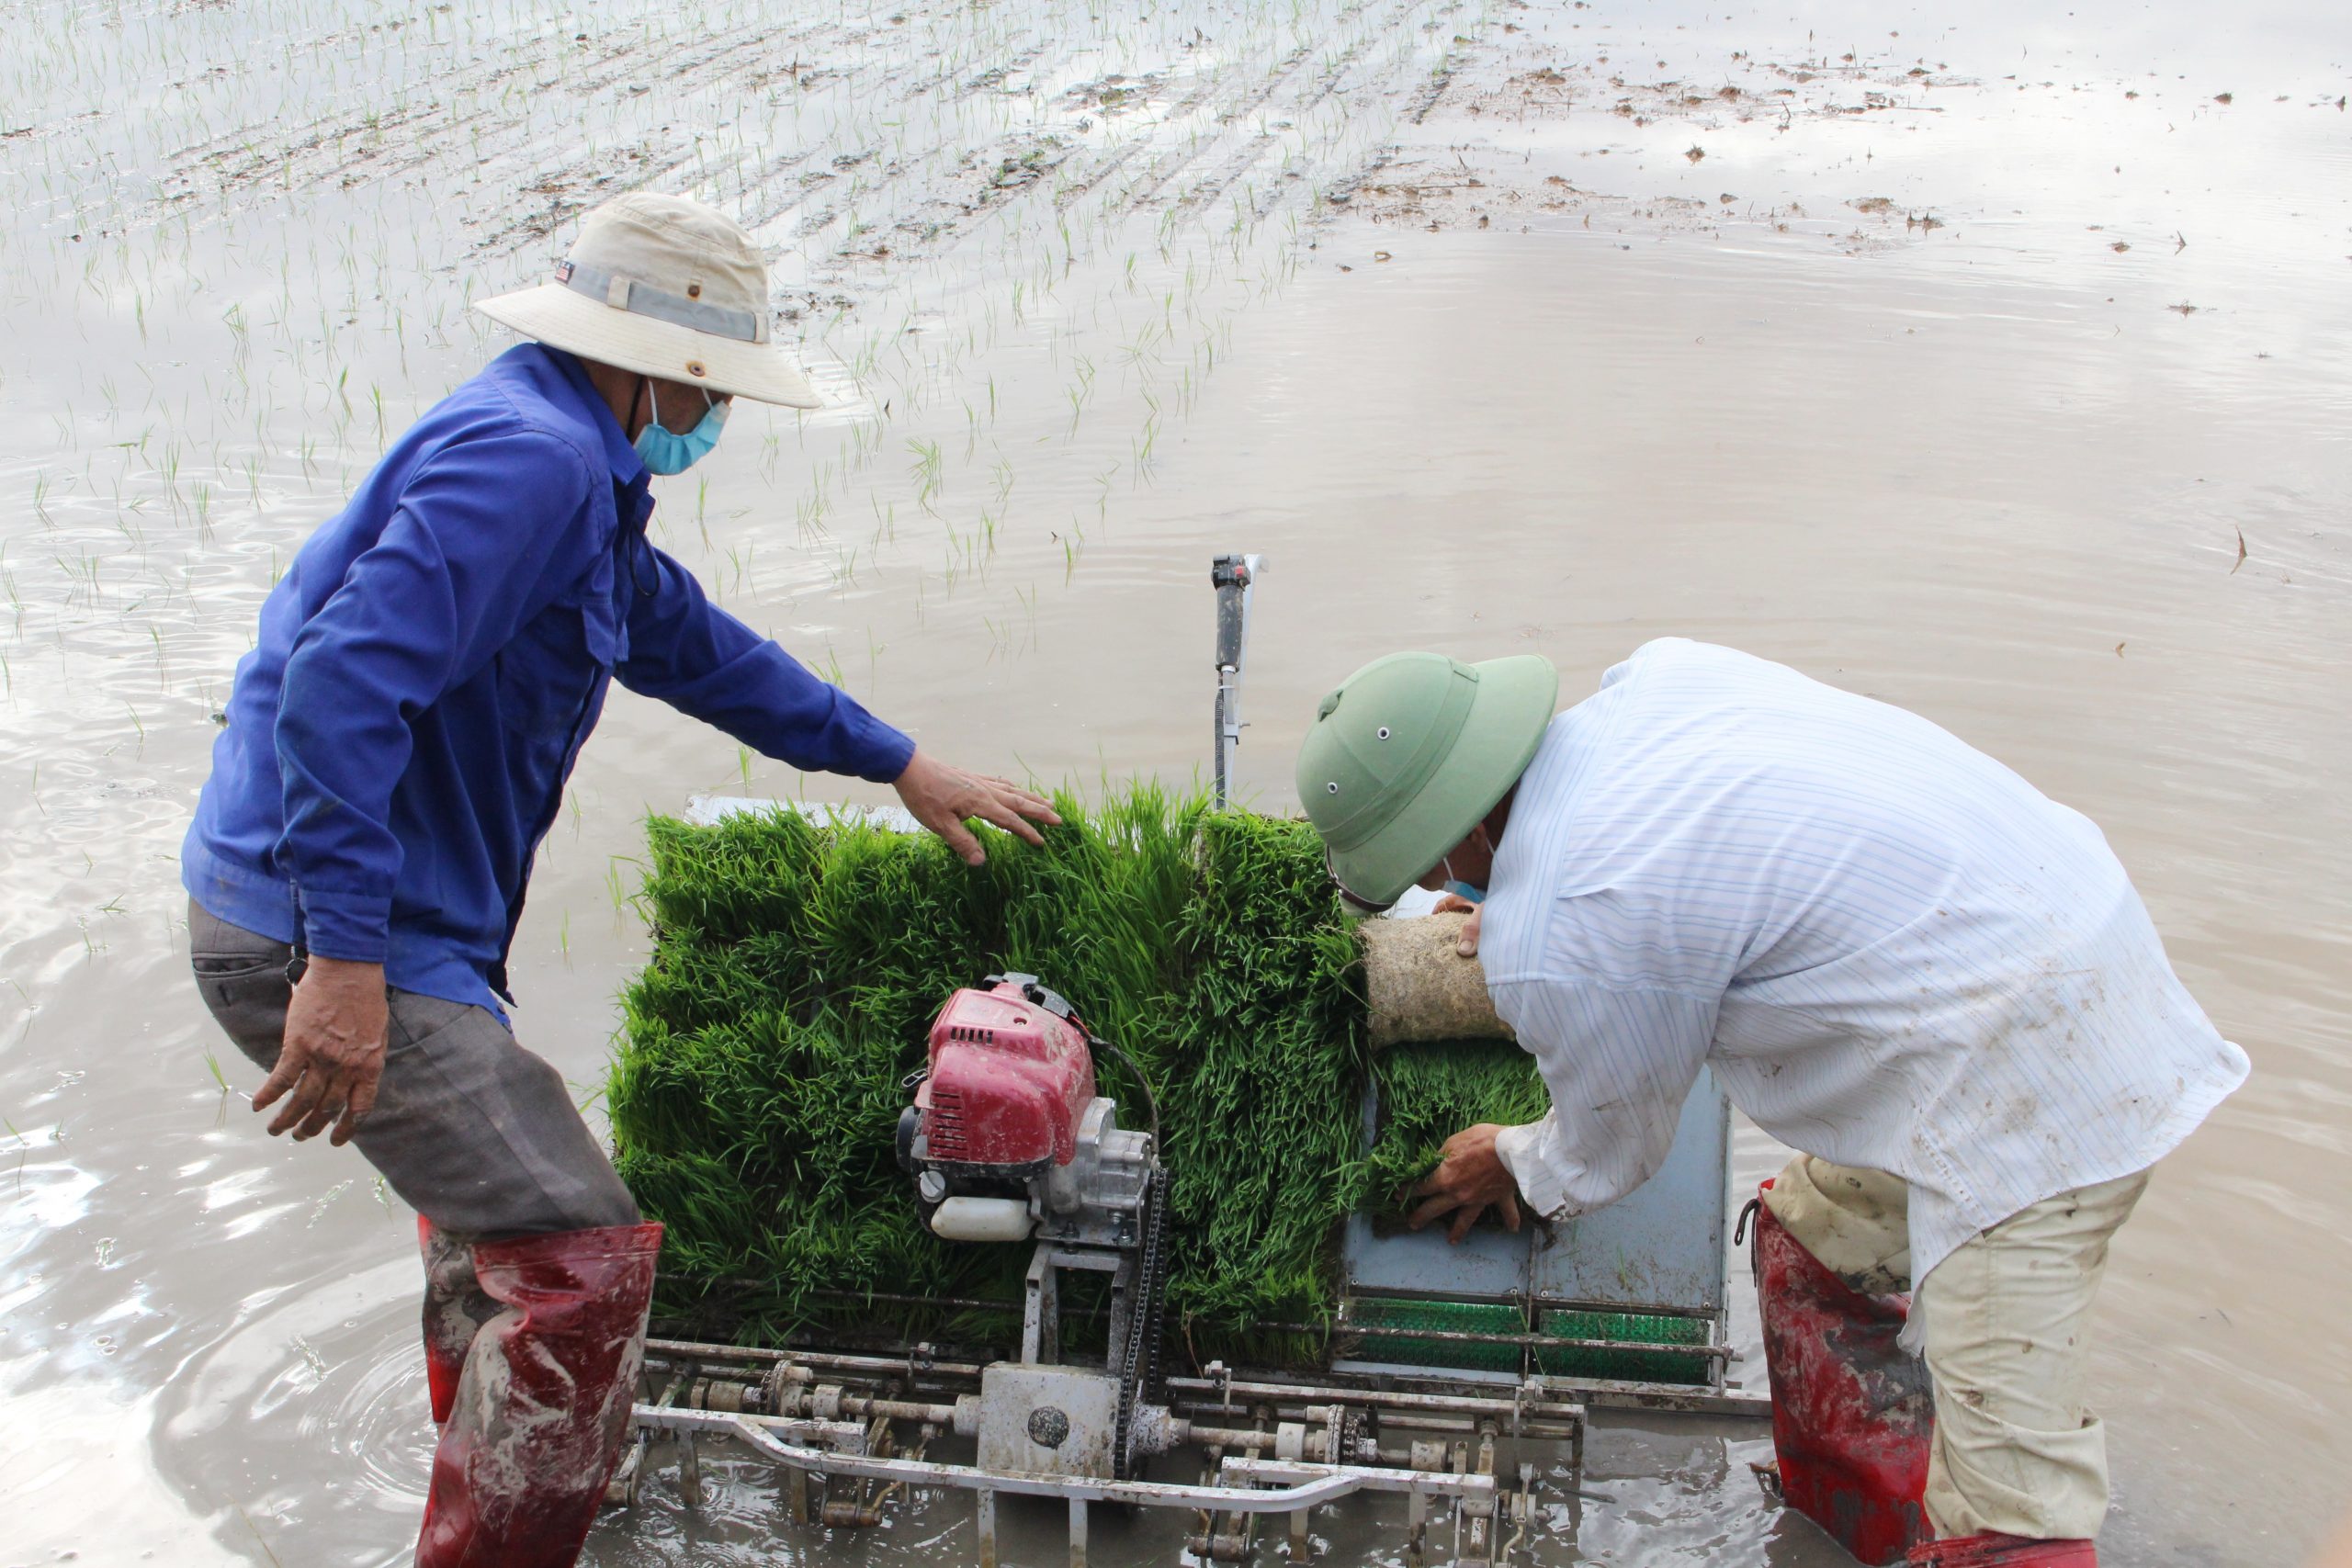 Nam Định: Minh Thuận triển khai mô hình máy cấy trong sản xuất nông nghiệp